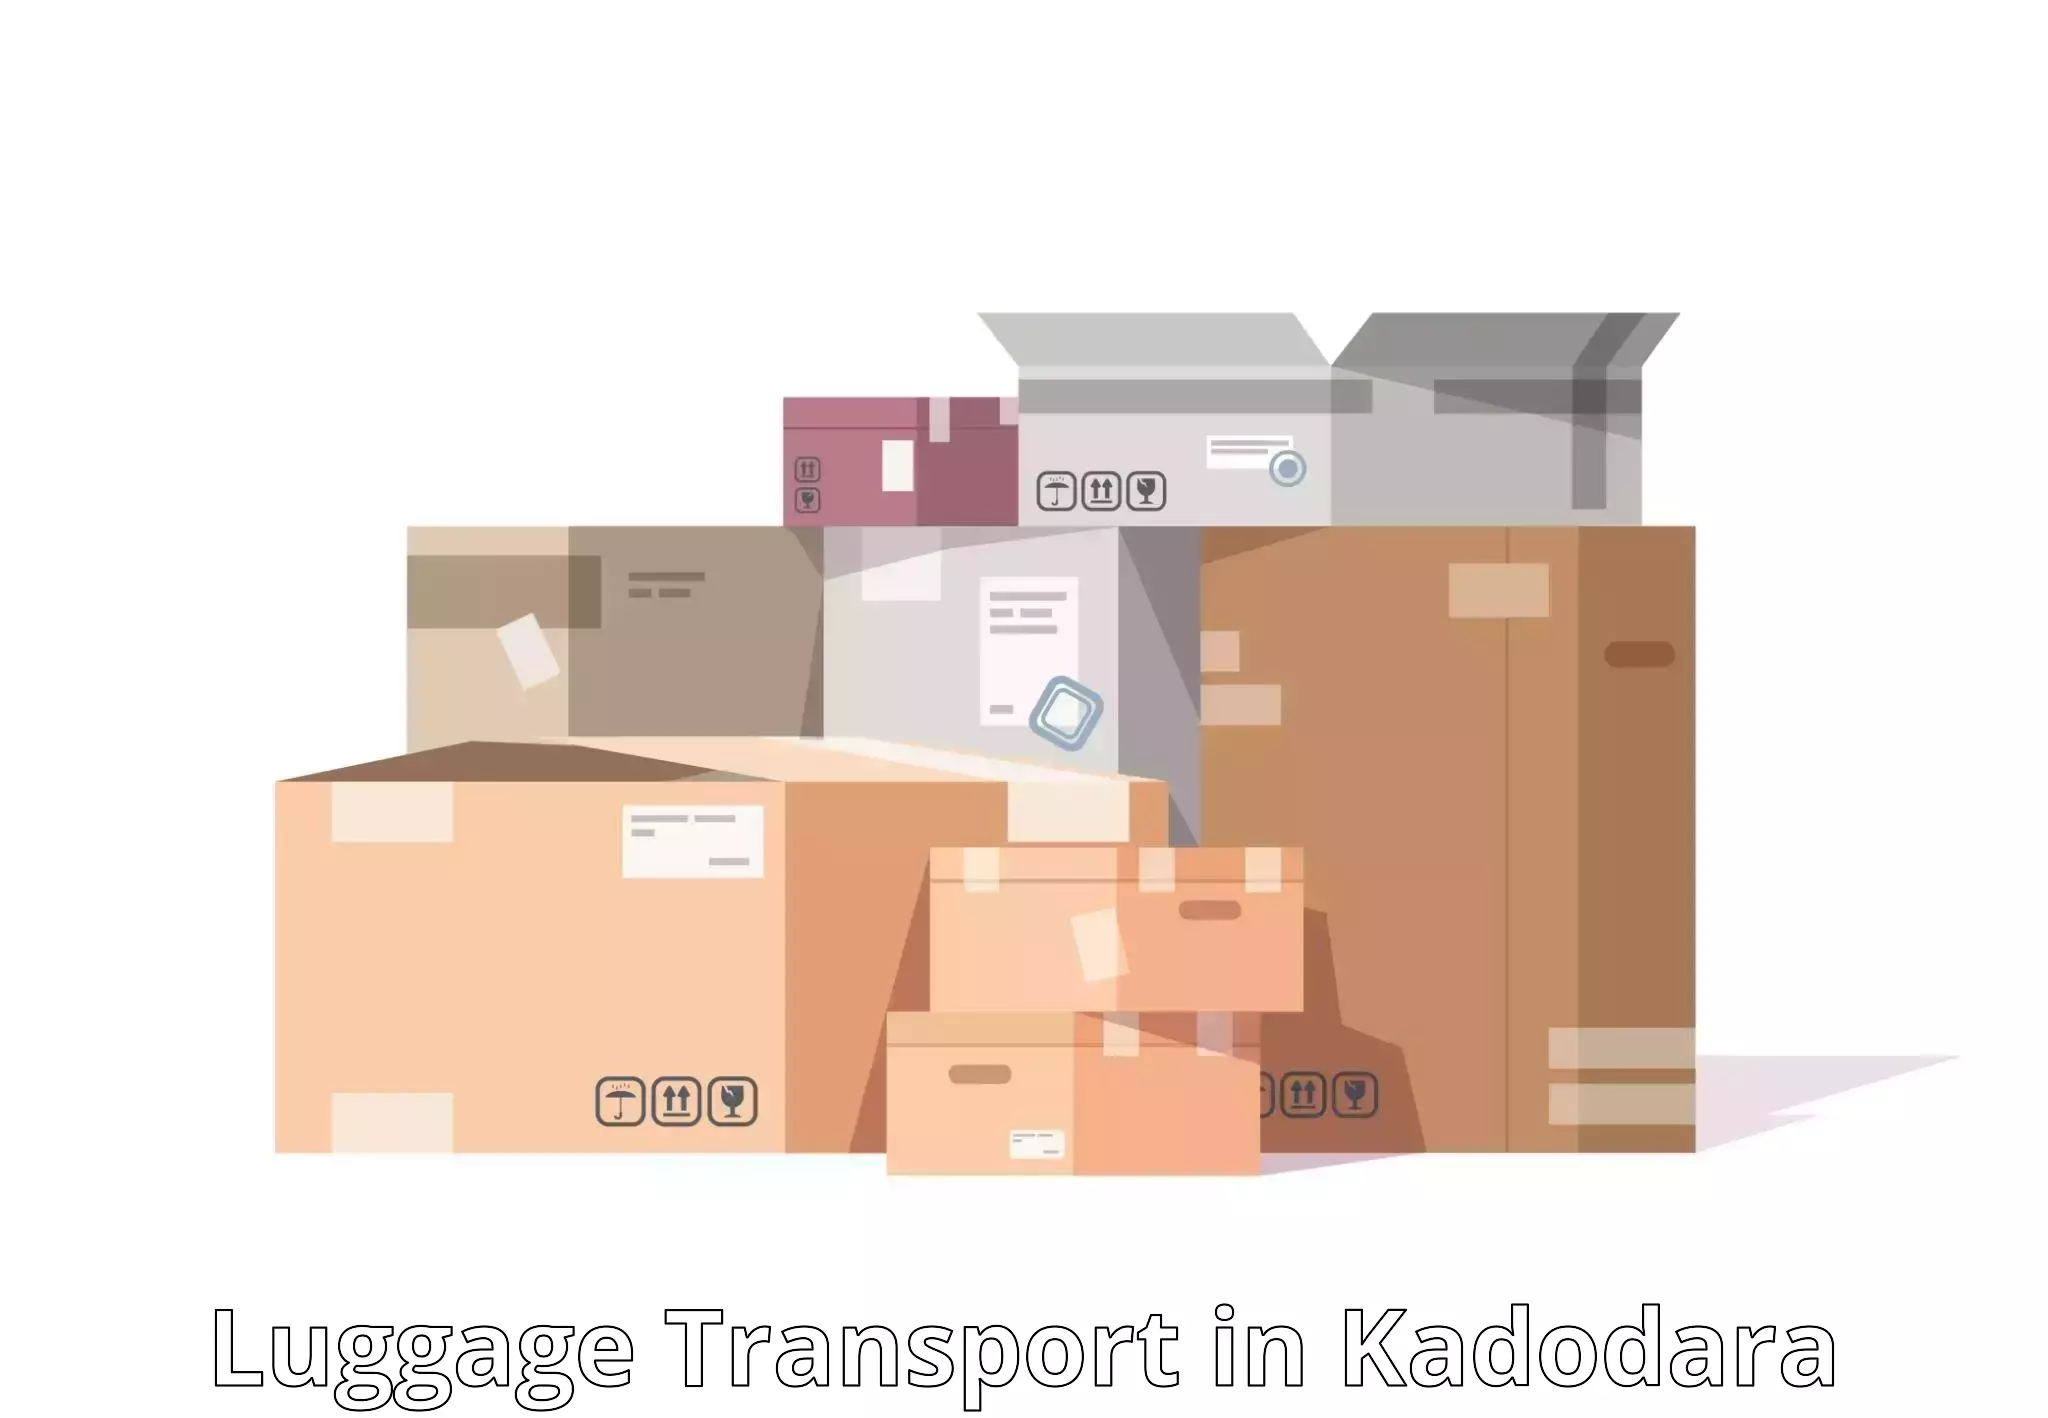 Baggage transport management in Kadodara